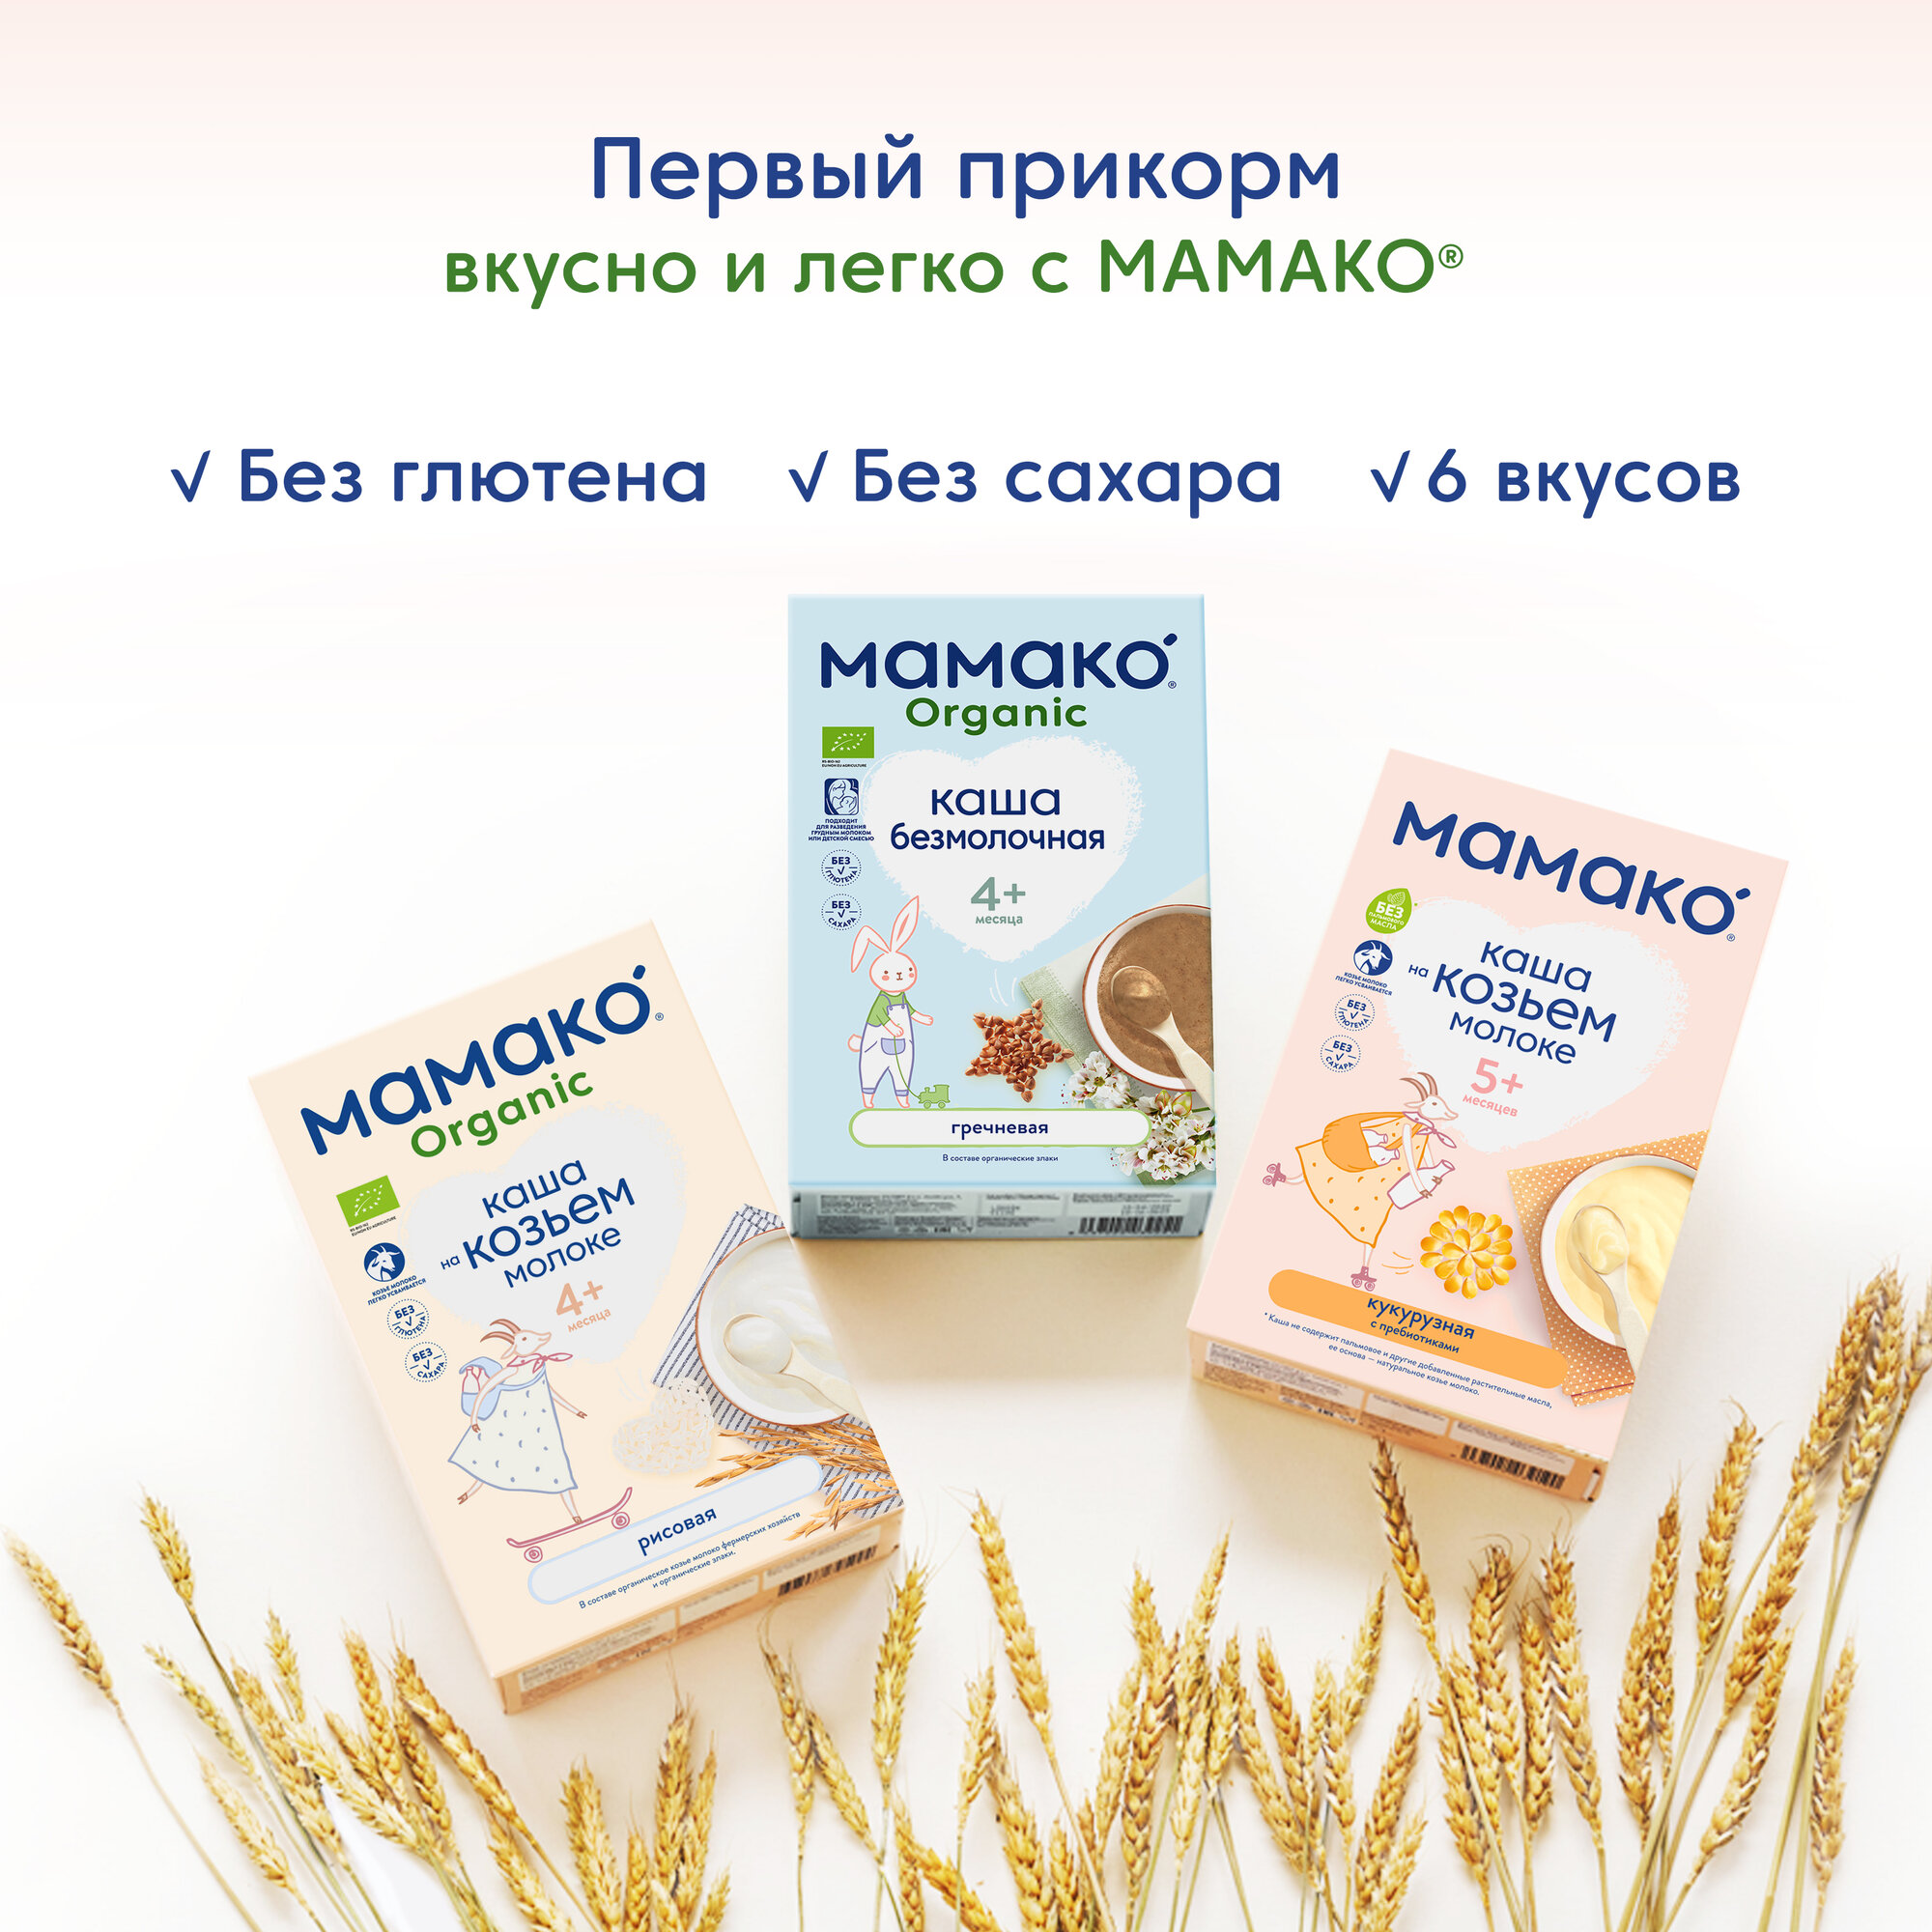 Сухая адаптированная молочная смесь Мамако Premium 1 на основе козьего молока, 400гр - фото №13